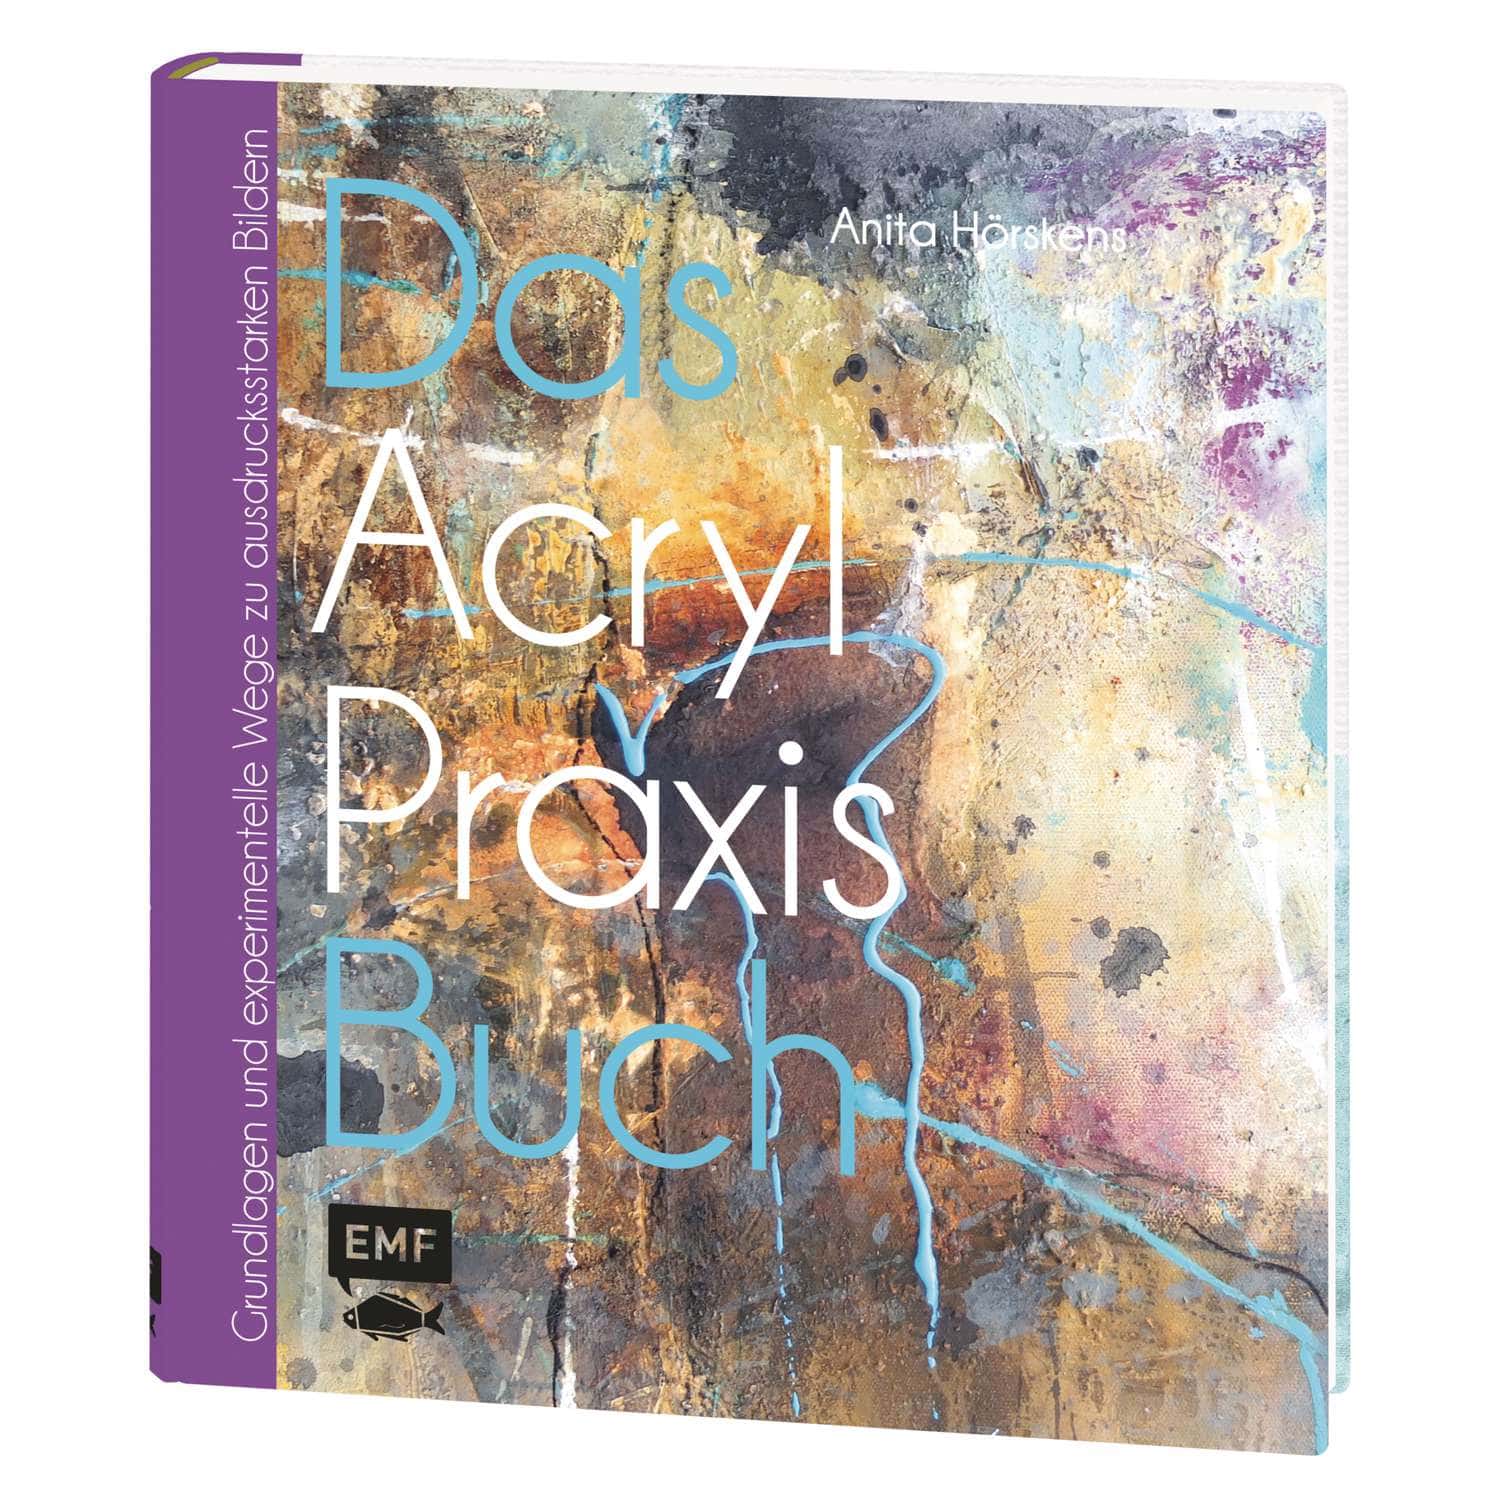 Acryl-Praxis-Buch